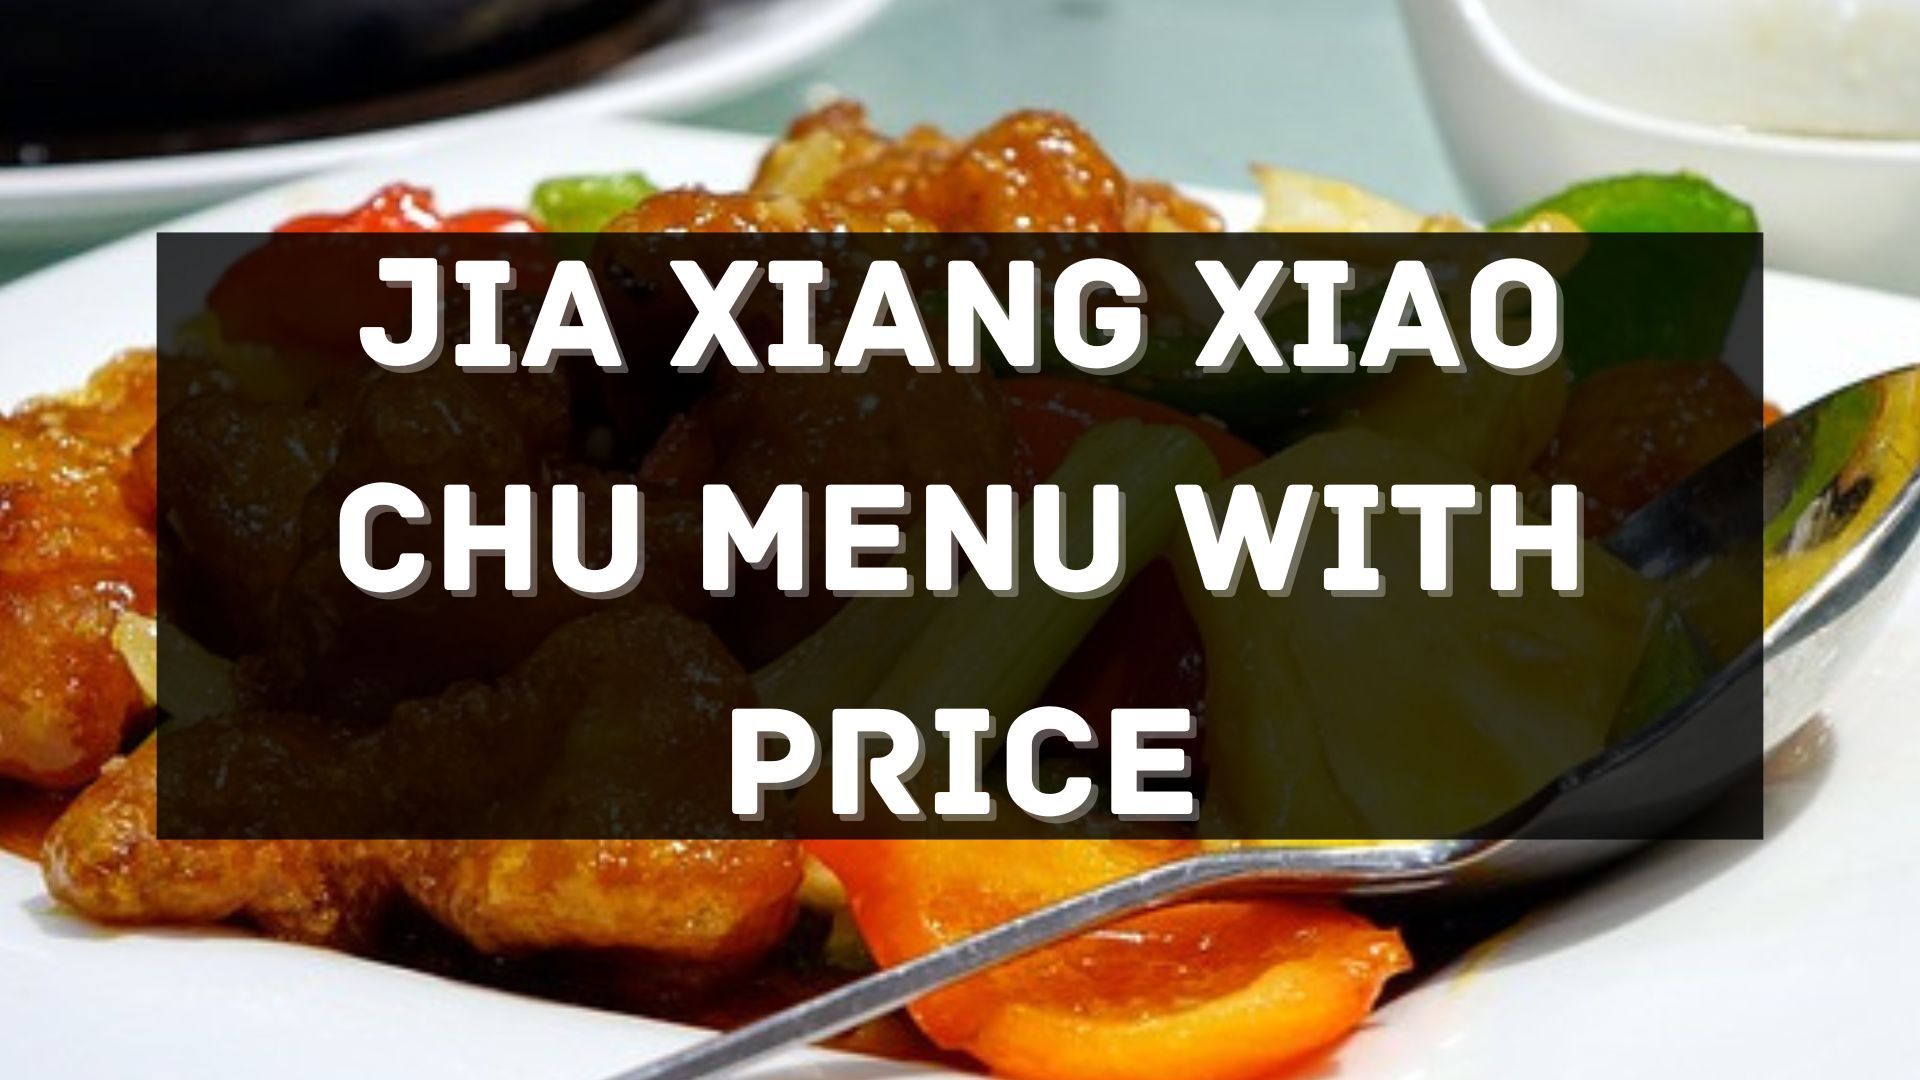 jia xiang xiao chu menu prices singapore